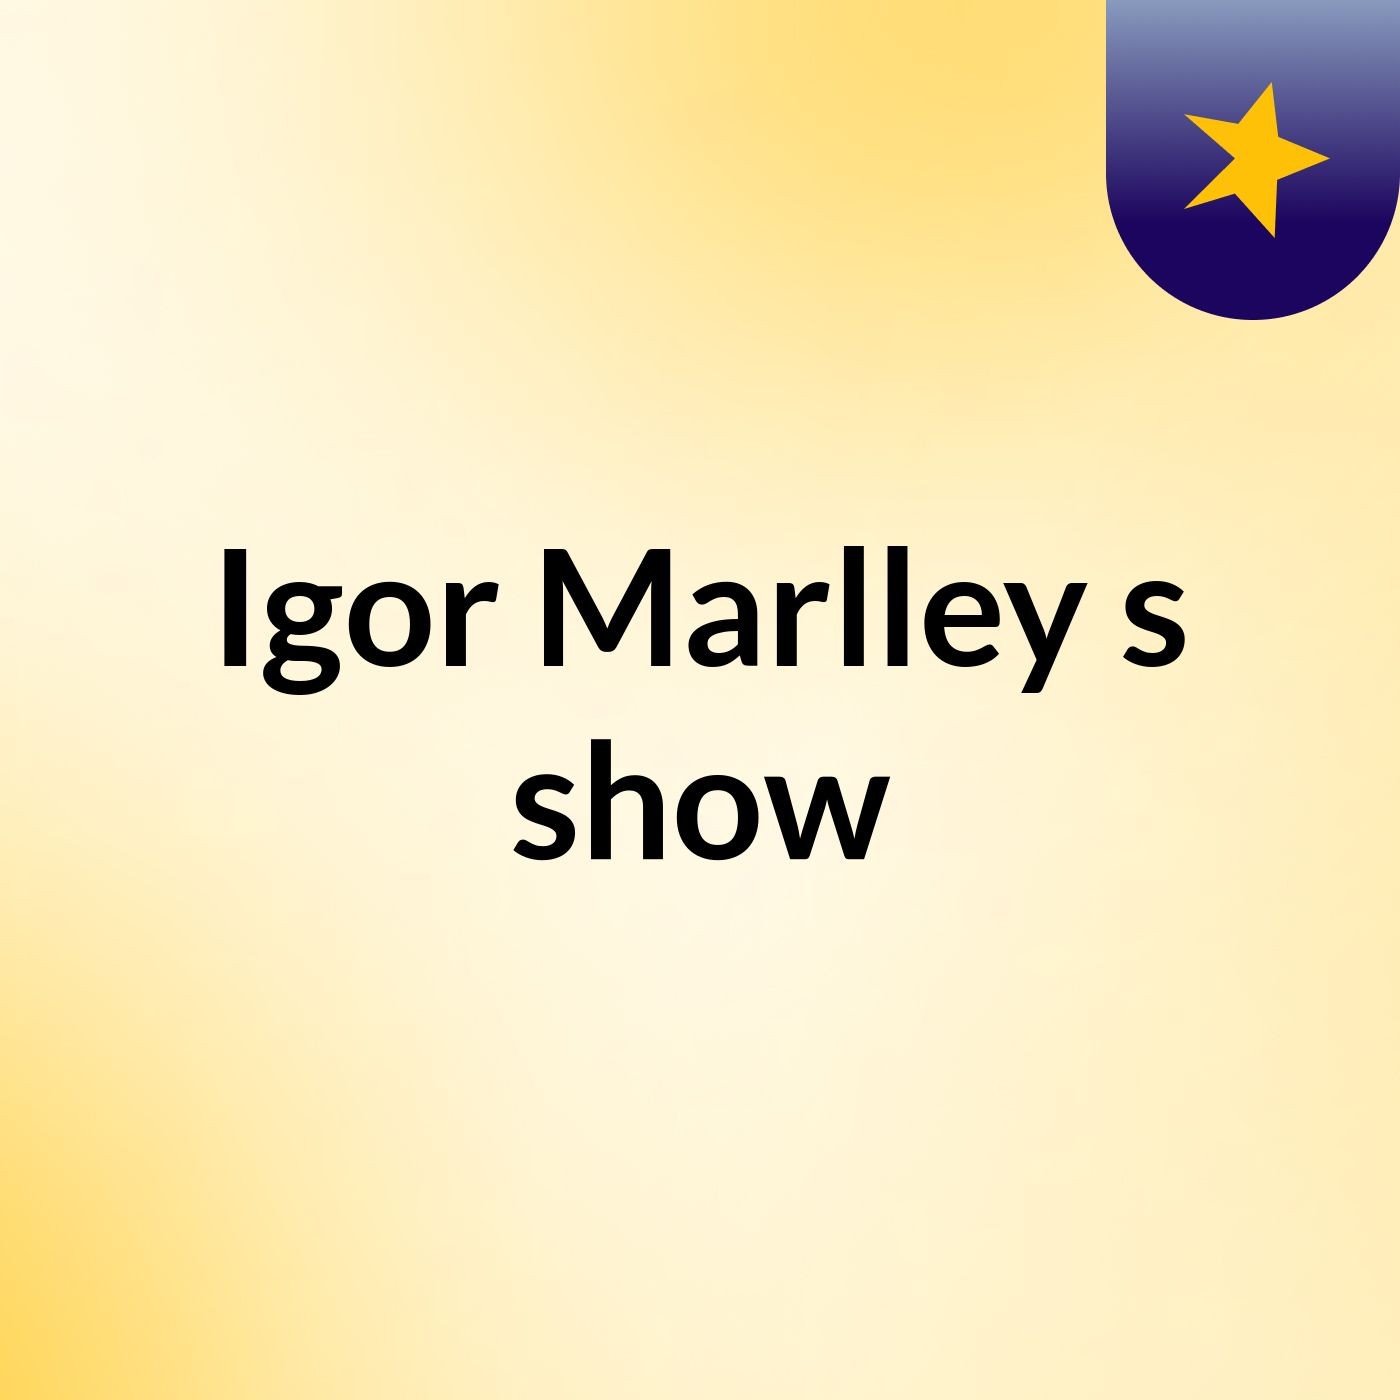 Igor Marlley's show